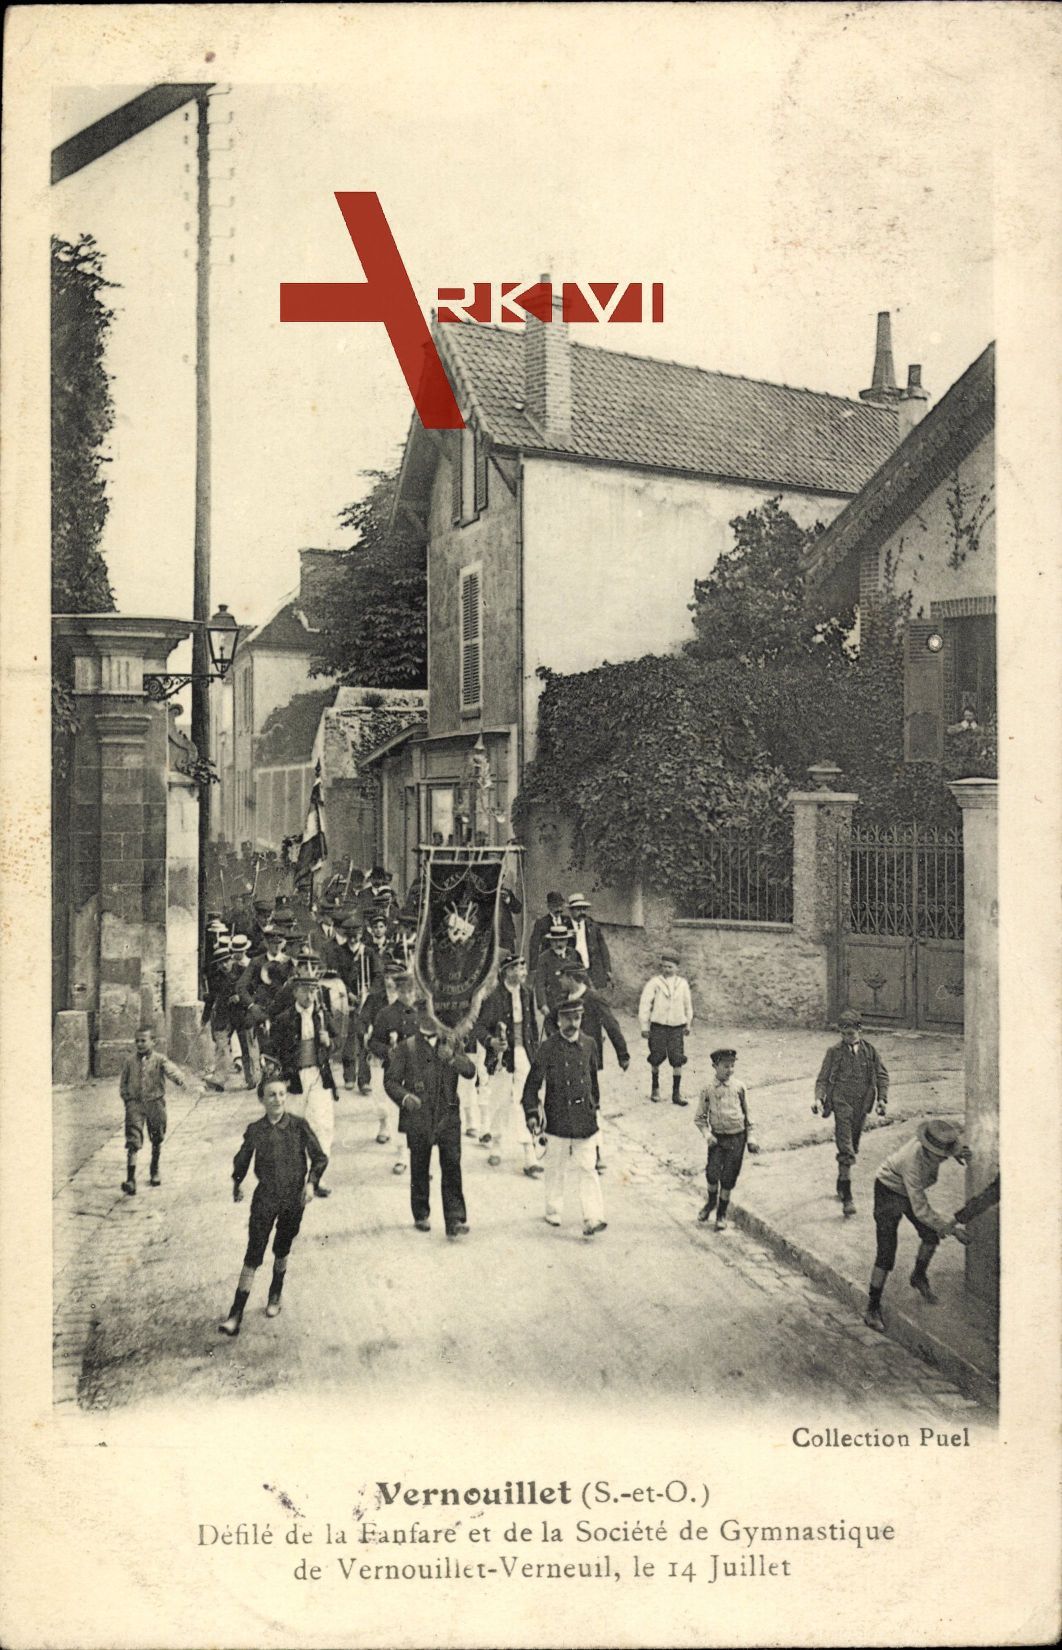 Fanfarenzug des Turnerbundes von Vernouillet Yvelines zieht durch die Straßen um 1906